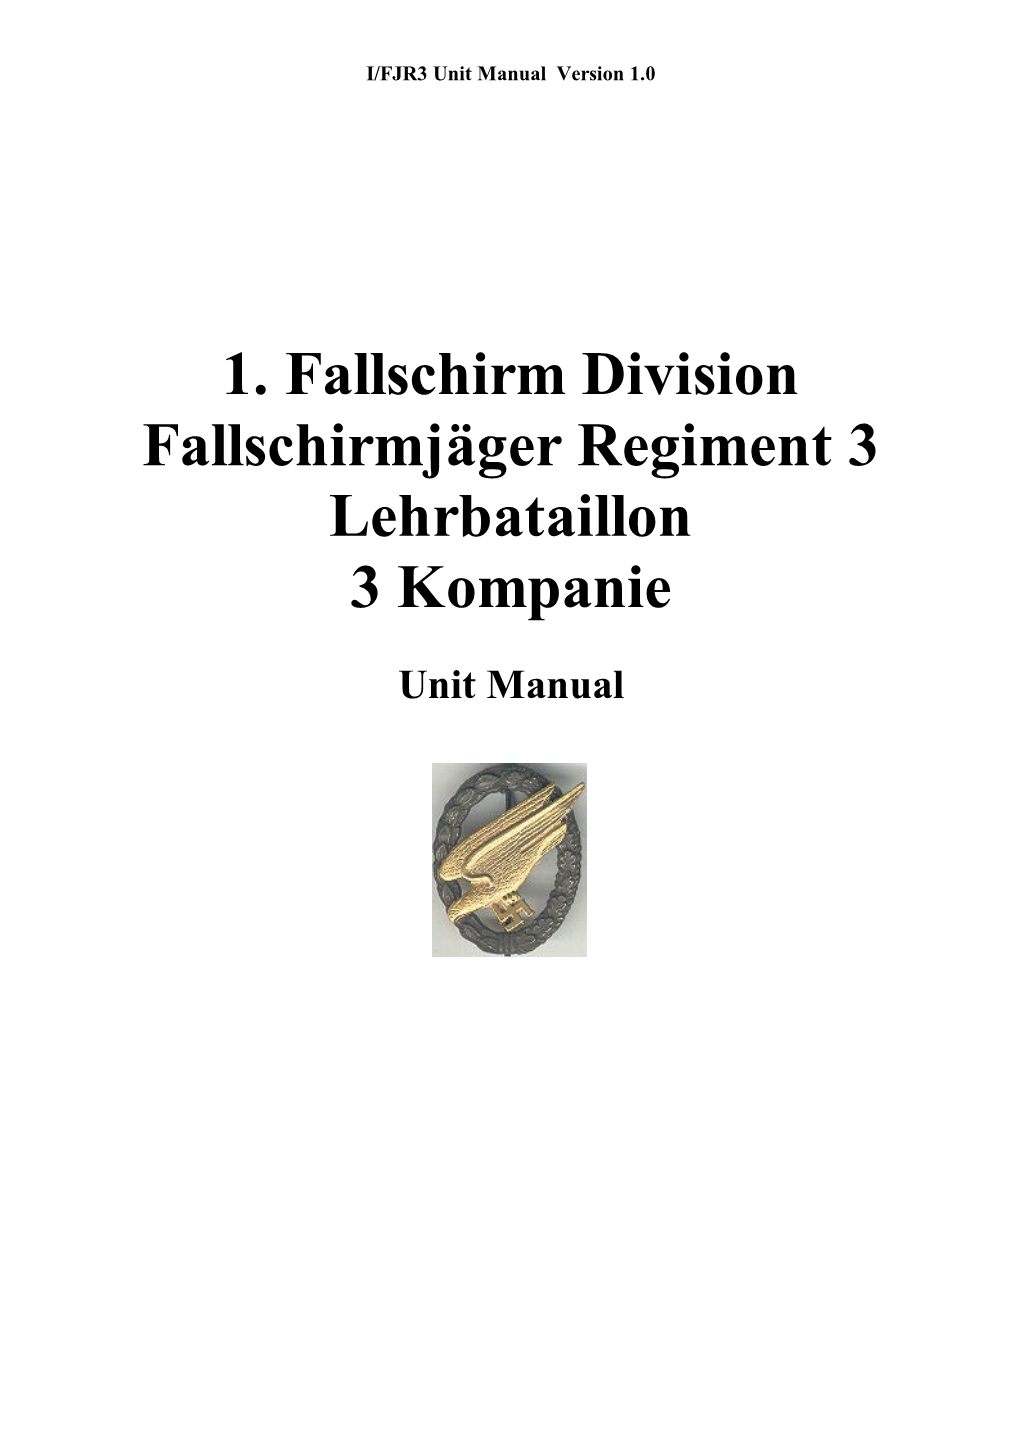 1. Fallschirm Division Fallschirmjäger Regiment 3 Lehrbataillon 3 Kompanie